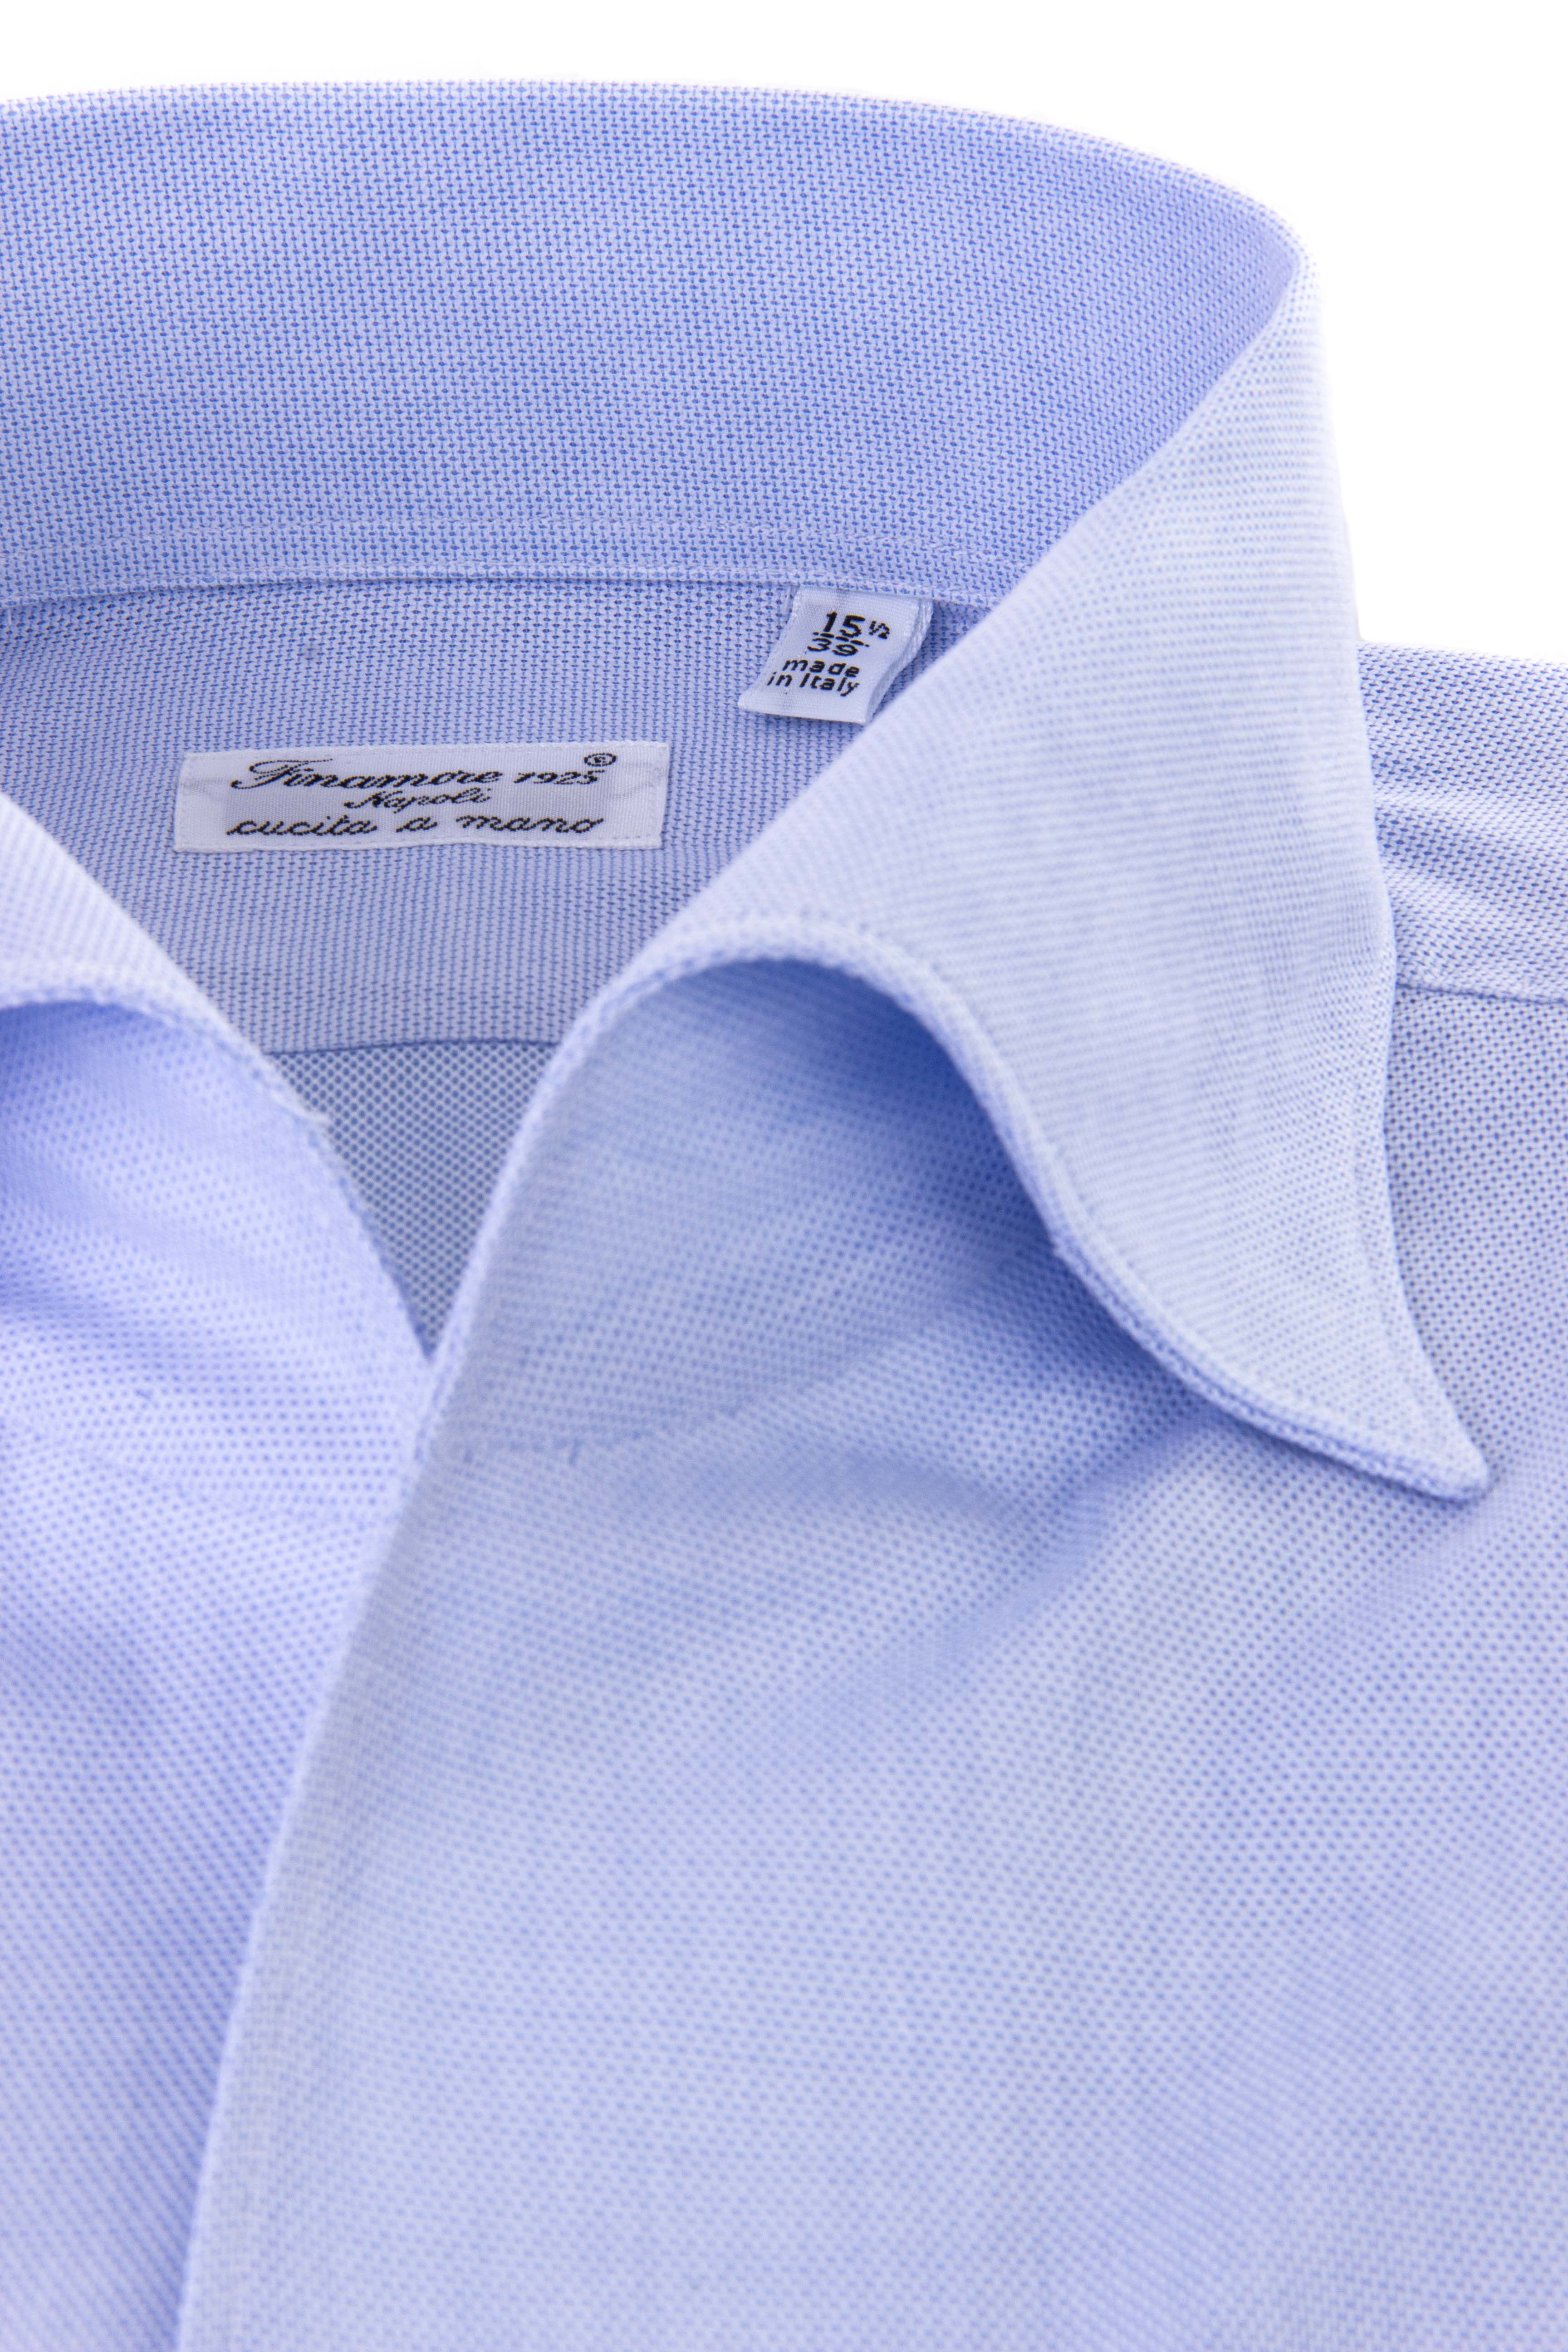 Maßgeschneidertes Hemd aus Baumwolle mit Ustica-Kragen